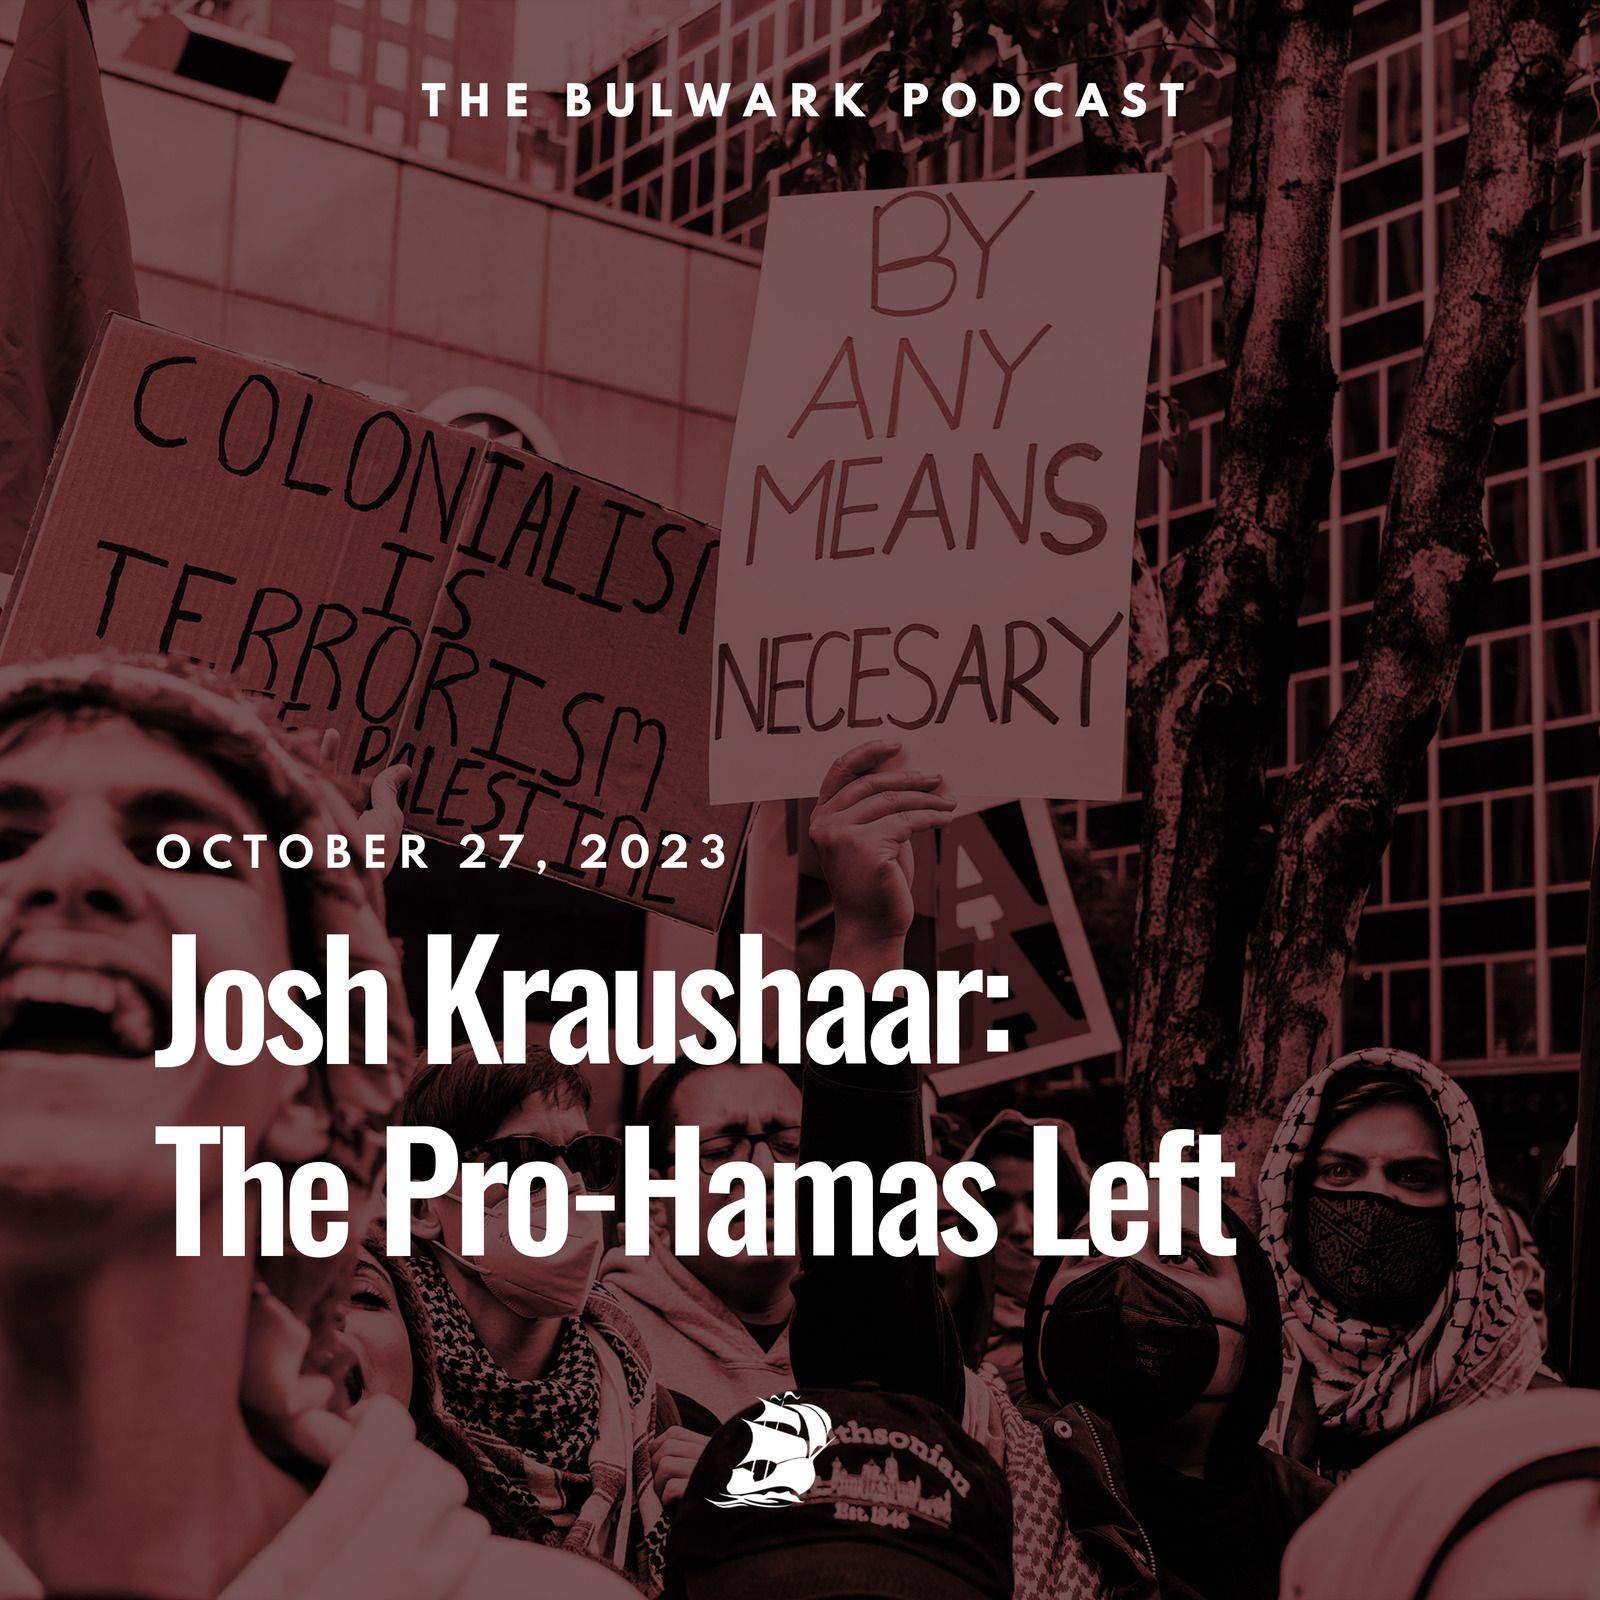 Josh Kraushaar: The Pro-Hamas Left